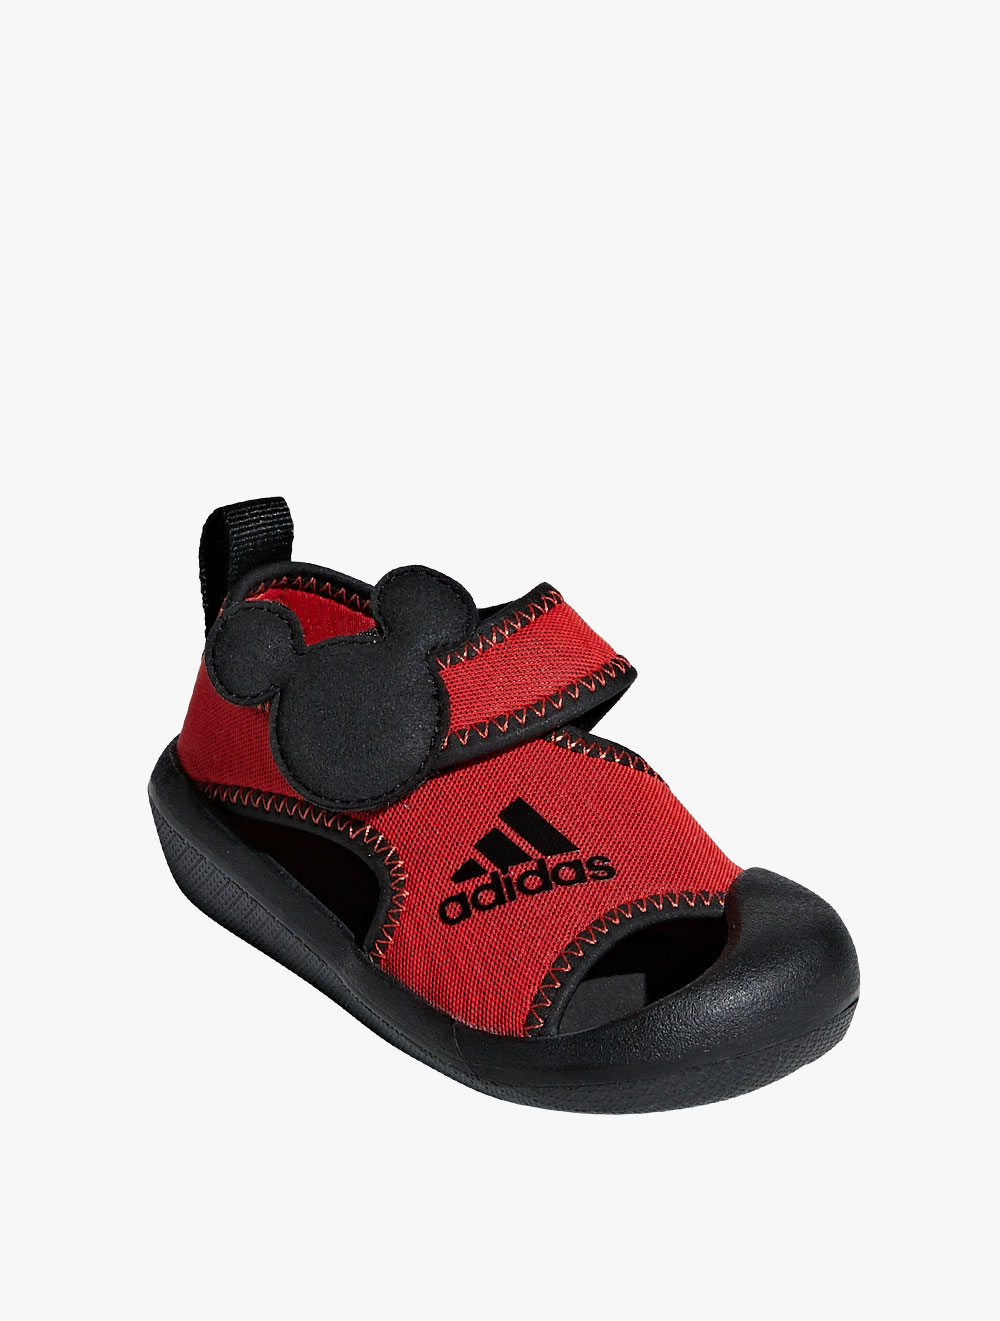 Adidas AltaVenture Mickey Unisex Kids Infant Sandal